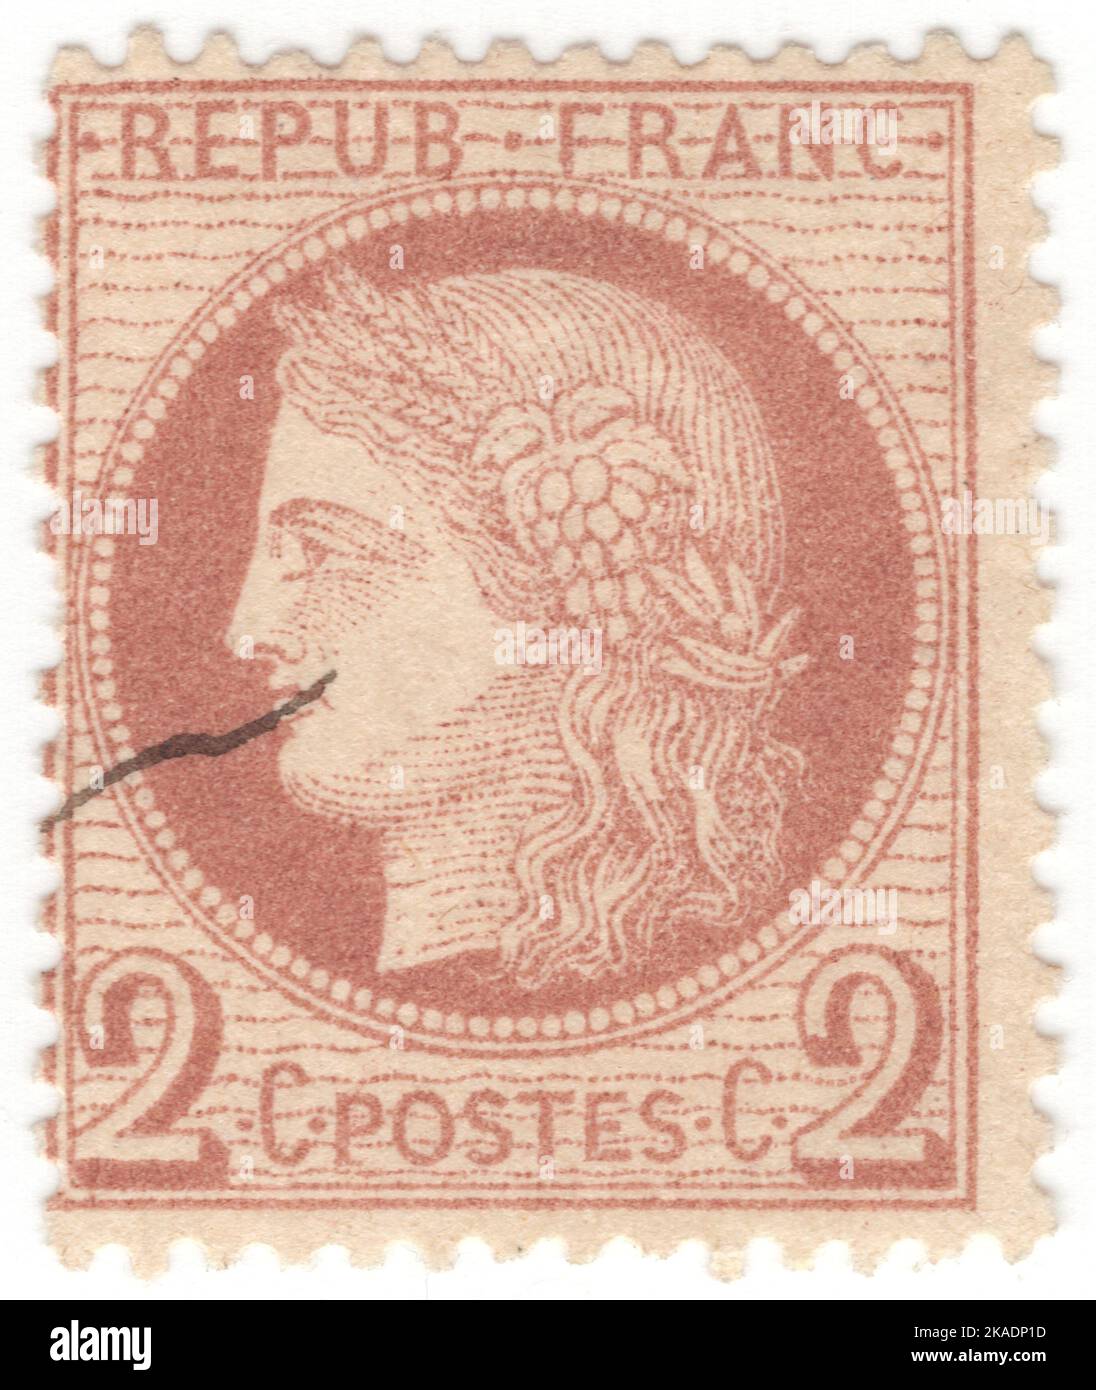 FRANKREICH - 1870: Eine 2 Rappen rotbraun auf gelblicher Briefmarke, die Ceres darstellt - Göttin der Landwirtschaft, Fruchtbarkeit, Getreide, Ernte, Mutterschaft, Die Erde, und kultivierten Kulturen Stockfoto